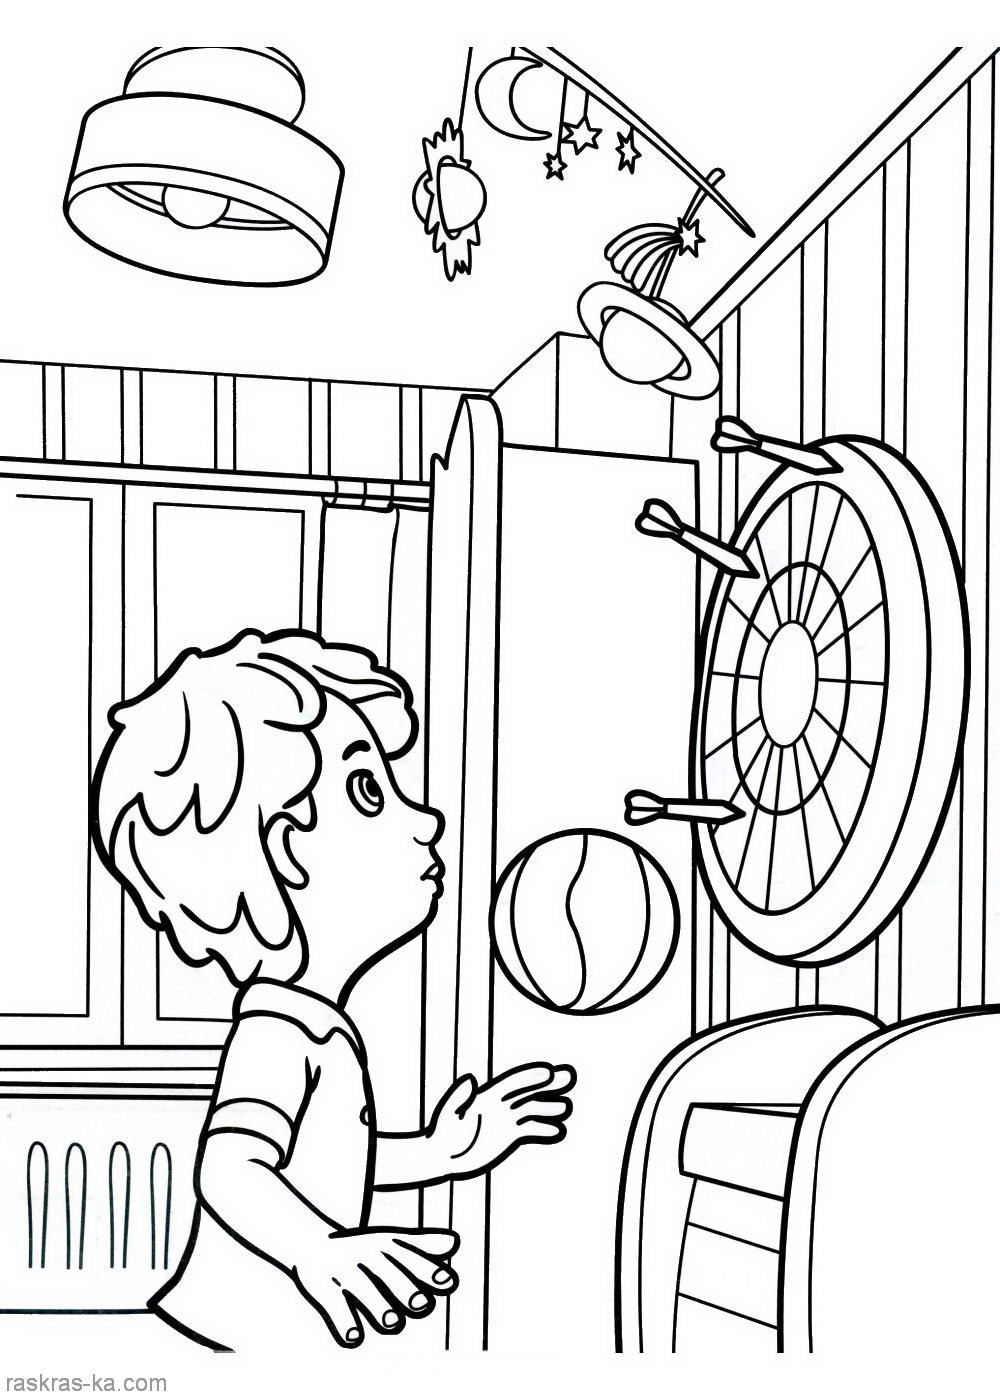 Разукрашки для мальчиков и девочек из мультфильма : Фиксики . Раскраски для развития навыков рисования для детей с героями мультфильма  Фиксики .  Раскраски Антистресс